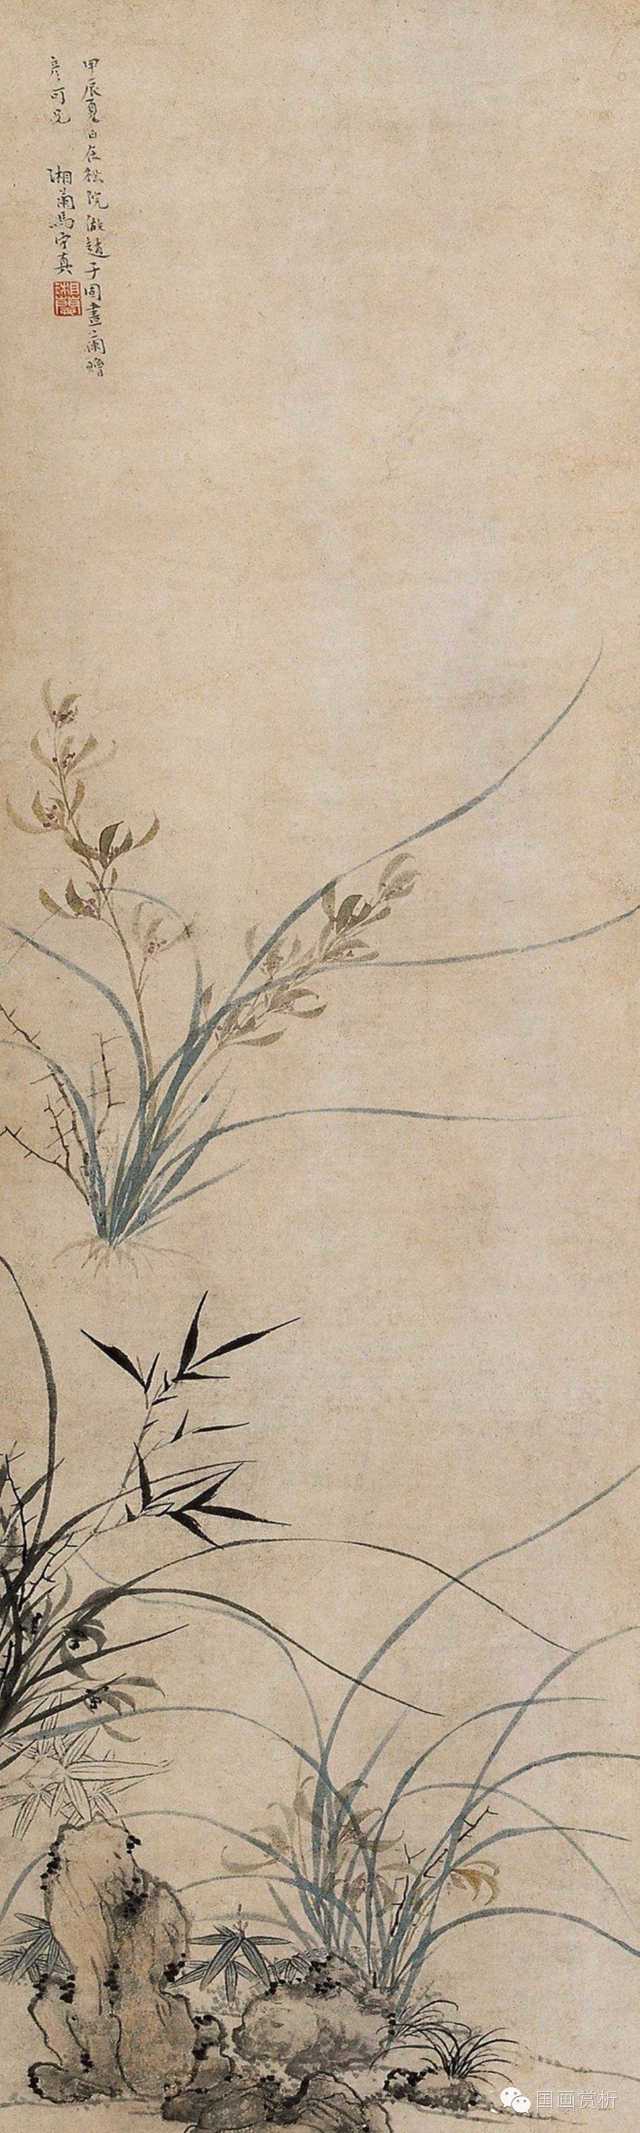 马守真的兰竹与传统文人画家尤其是"吴门画派"中文徵明等人的花卉